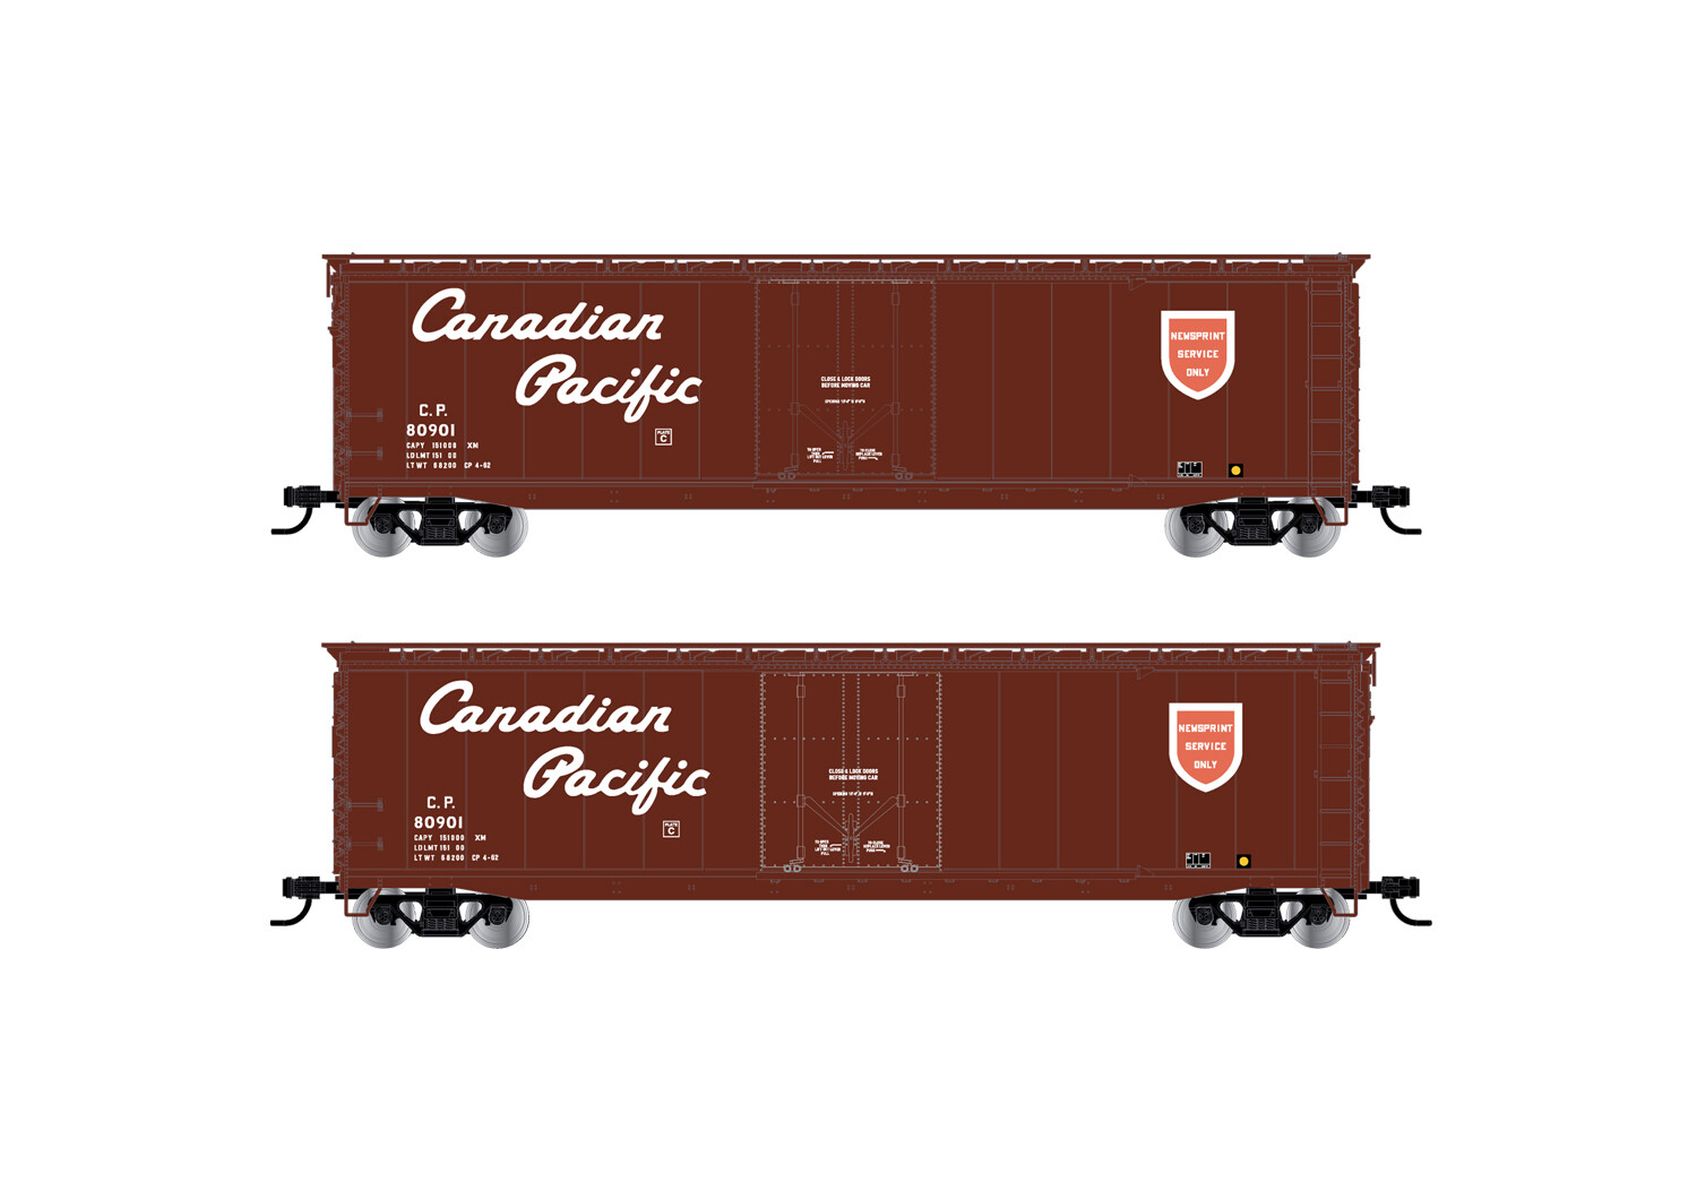 Rivarossi HR6636C - Gedeckter Güterwagen, Canadian Pacific, 80920, Ep.III